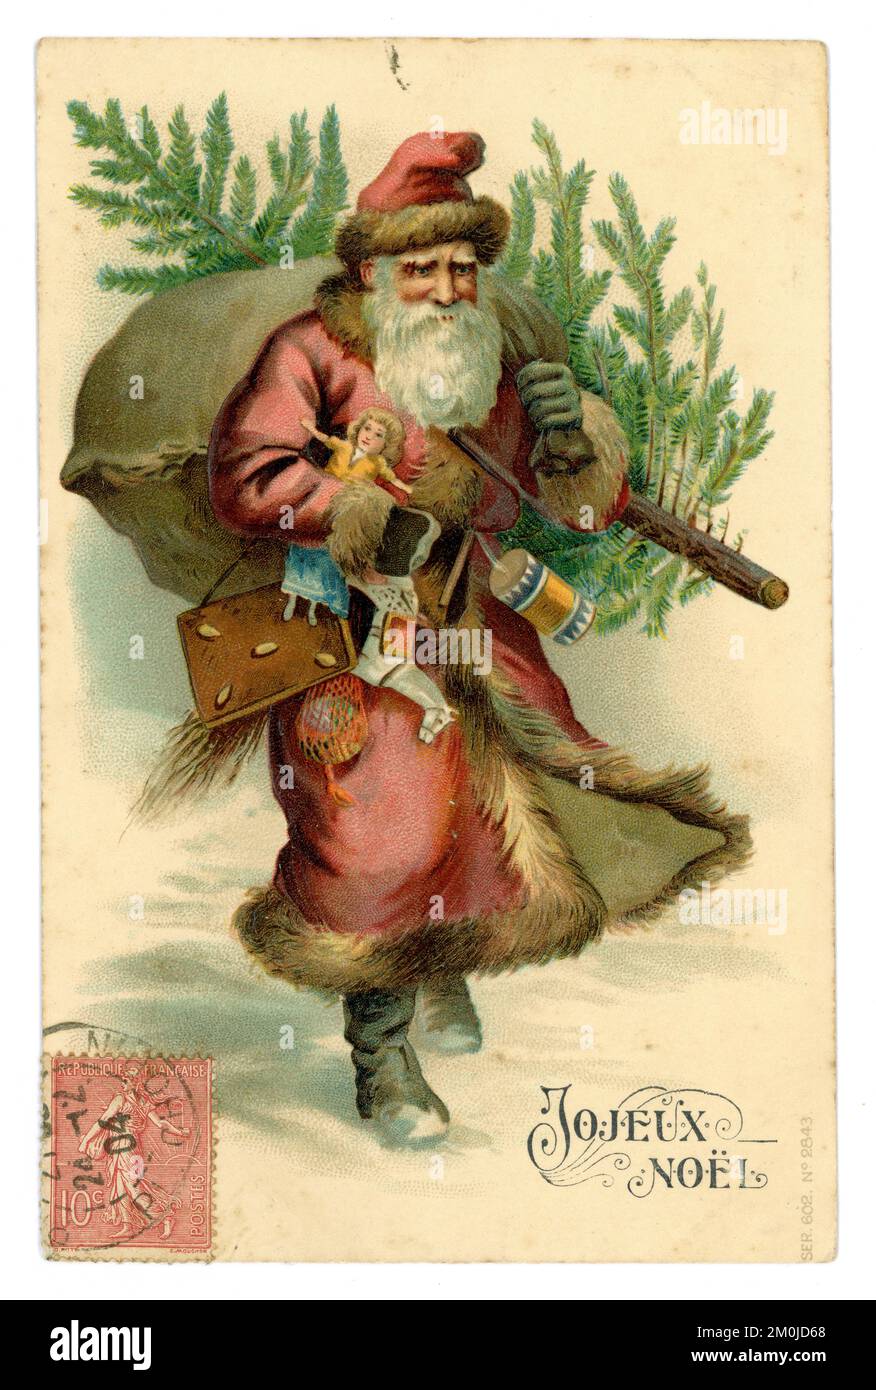 Edwardianische Ära Grußkarte Postkarte des Weihnachtsvaters mit Geschenken und einem Baum mit französischem Stempel auf der Vorderseite, Grußworte ist Joyeux Noel. Veröffentlicht am 24. Dezember 1904 Stockfoto